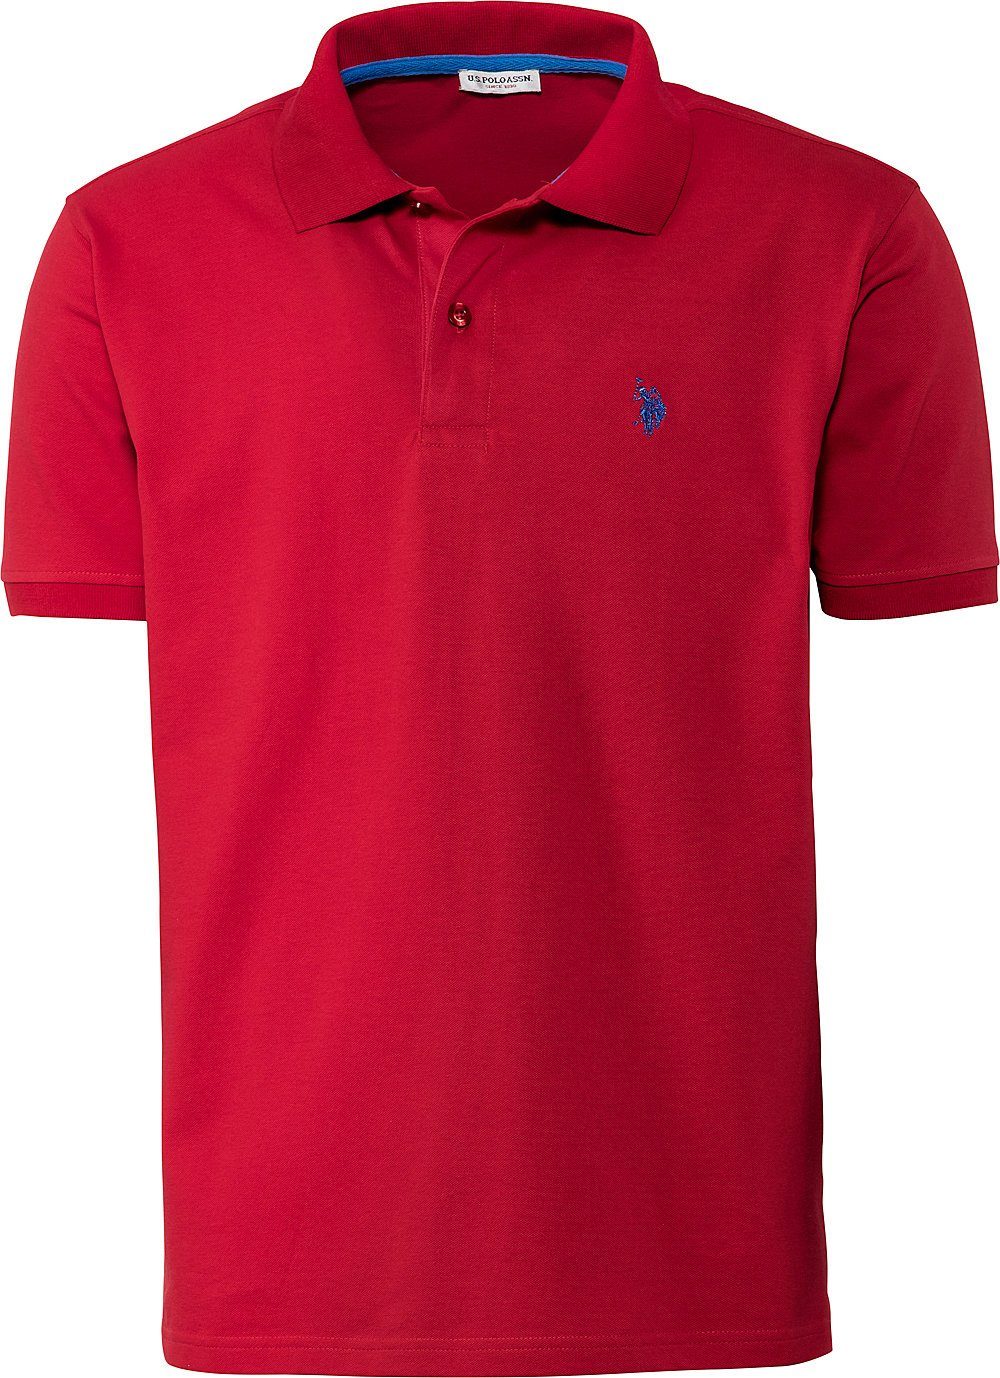 U.S. Polo Assn Poloshirt schöne Piqué-Struktur und Logo-Stick im Kontrastton rot